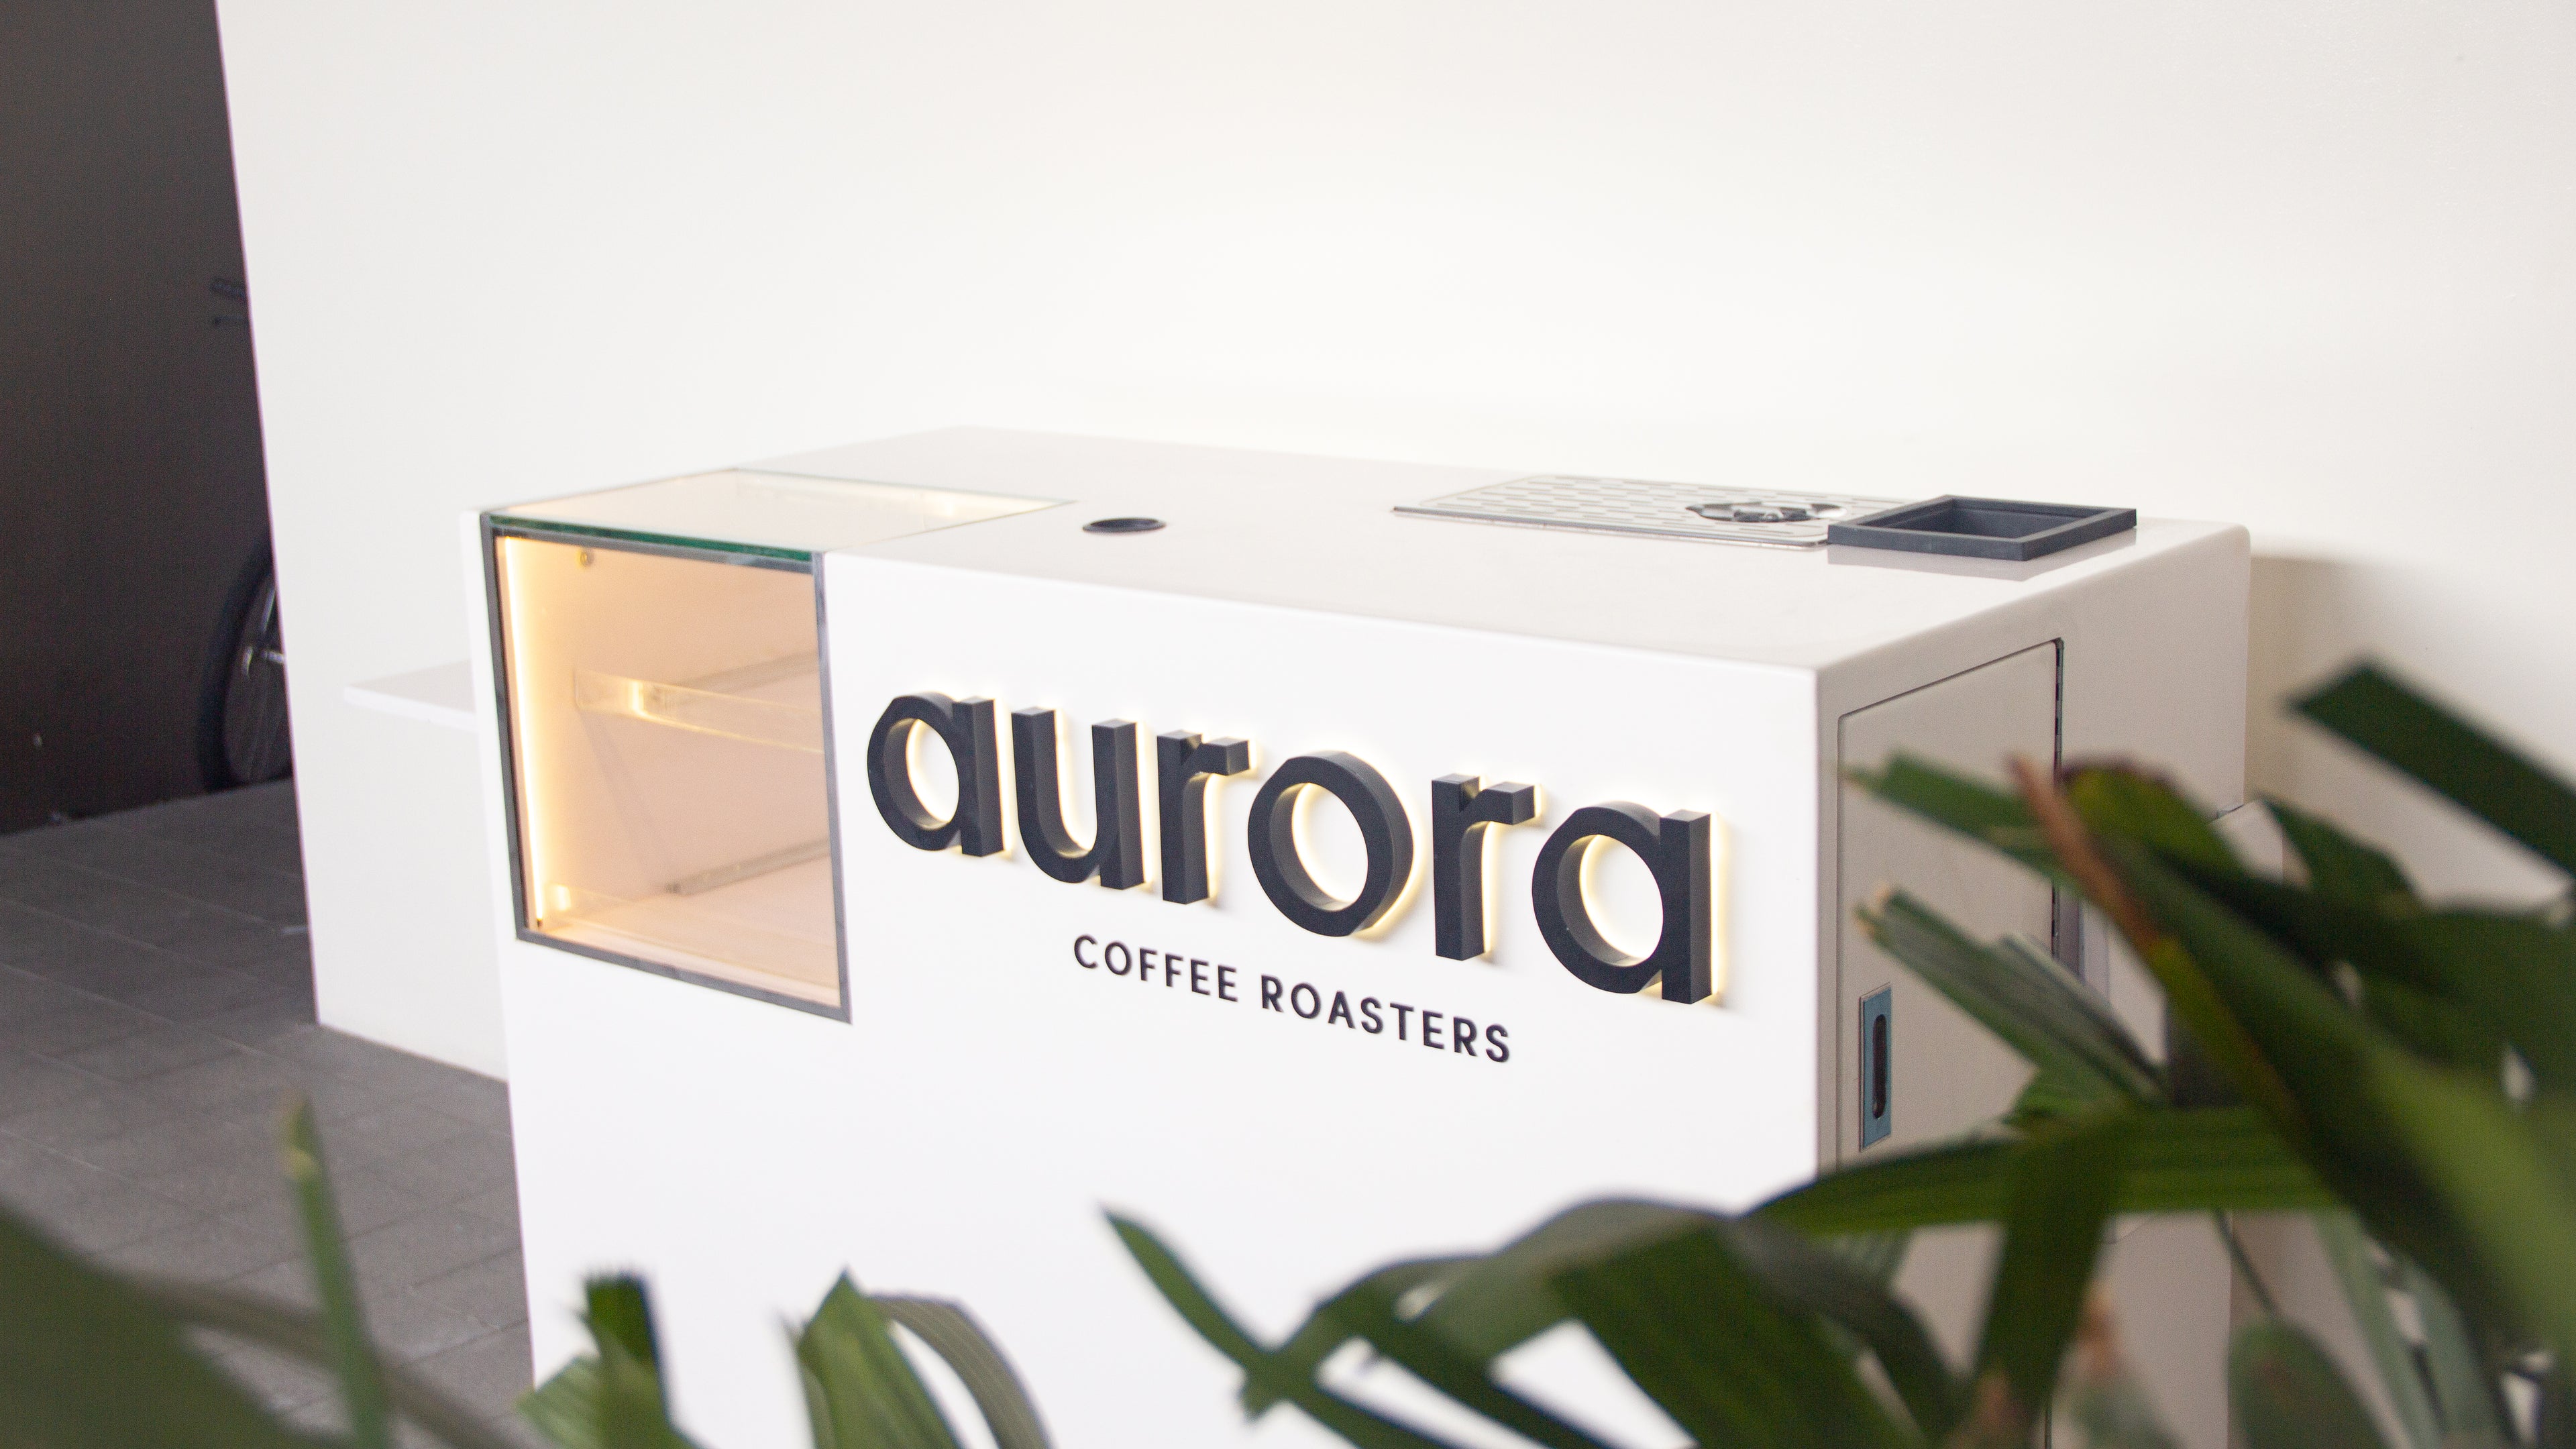 Prensa Francesa – Aurora Coffee Bar